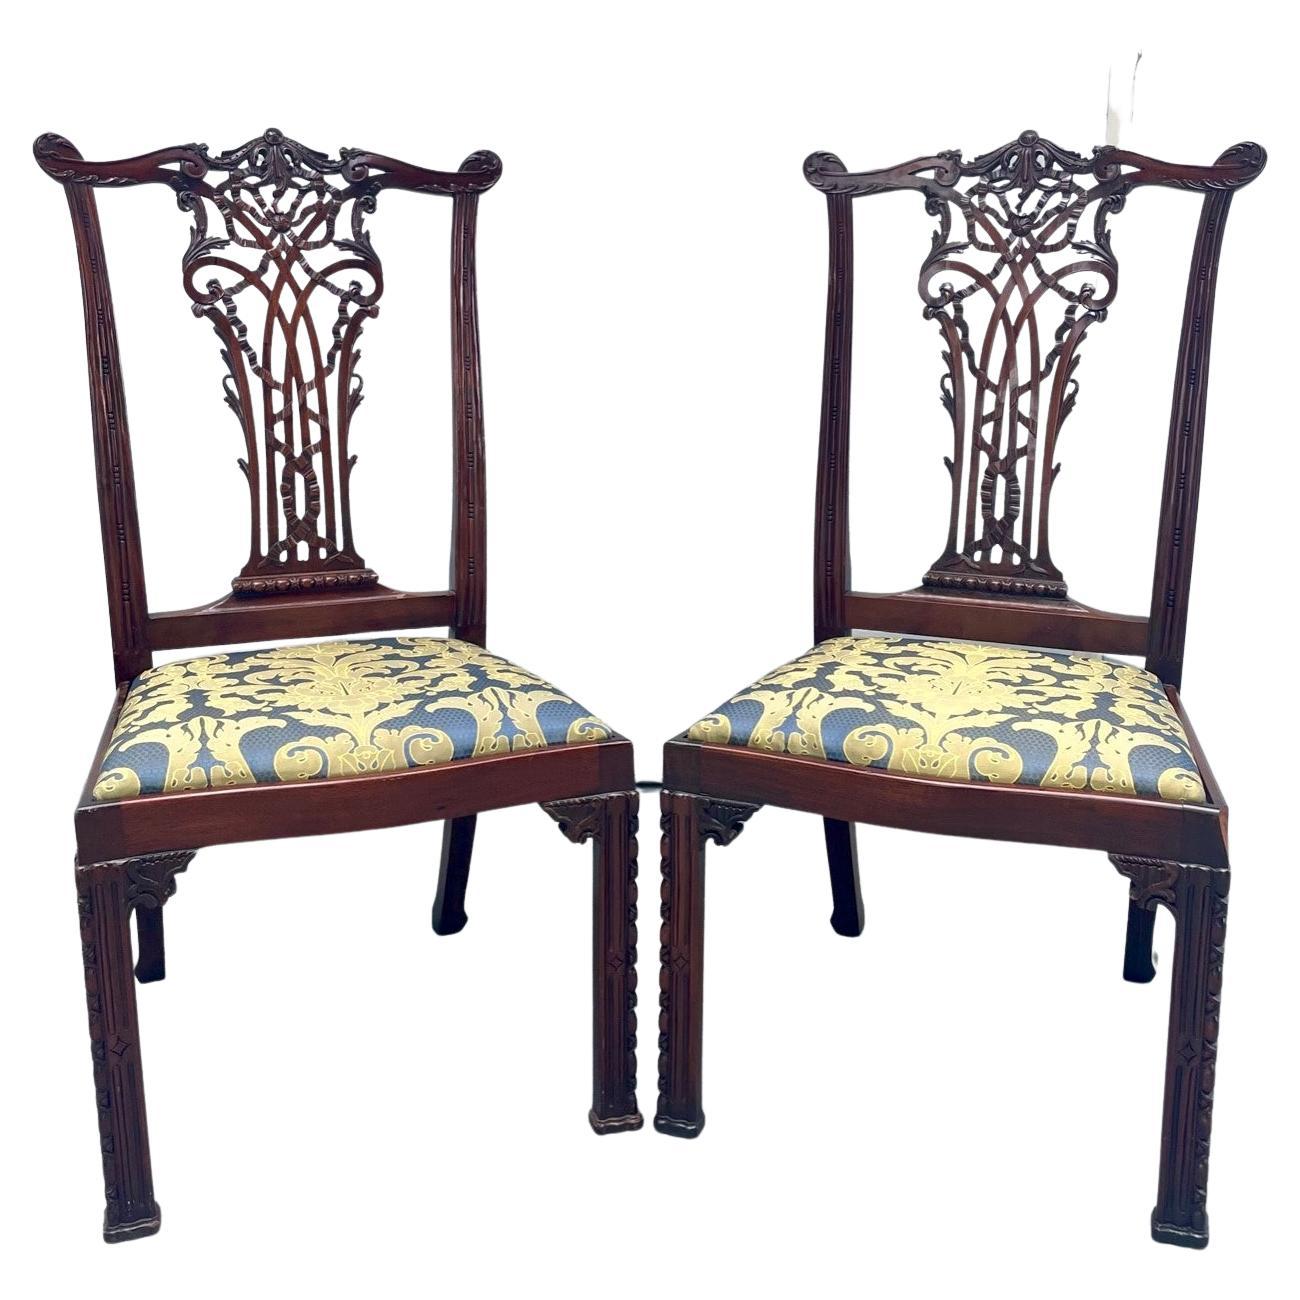 Paar englische Chippendale-Mahagoni-Beistellstühle, um 1890.

Hervorragendes Paar wunderschön geschnitzter Mahagoni-Seitenstühle im klassischen Chippendale-Stil. Sie sind nach einem der größten englischen Möbelhersteller gefertigt. Eine geformte